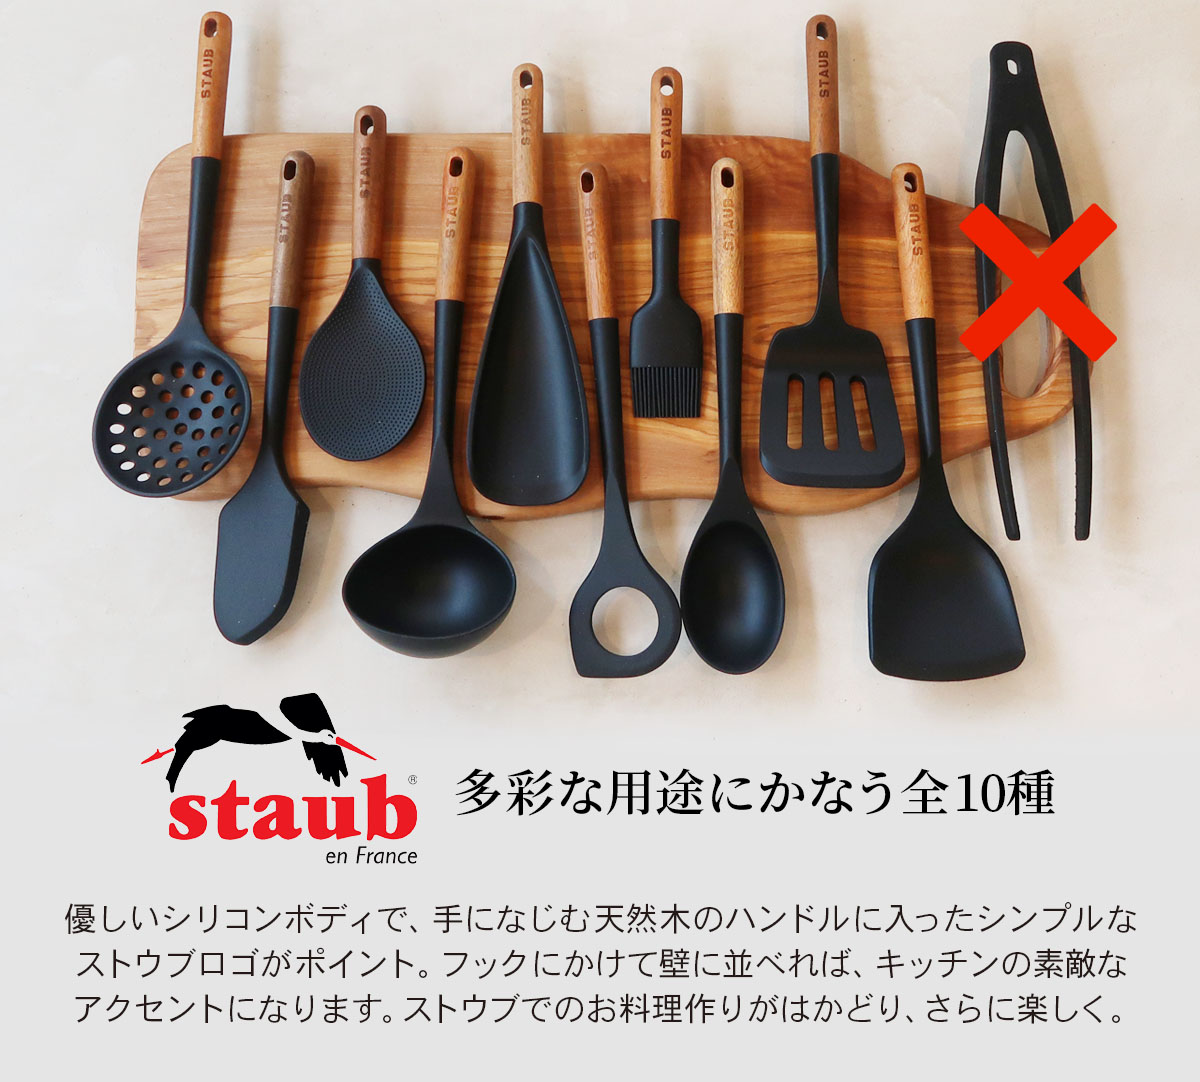 STAUB スープレードル 40503-104 おたま ブラック シリコン 木製ハンドル アウトドア ストウブ キッチンツール 黒  :ZZ3272340040962:neut tools(ニュートツールズ) - 通販 - Yahoo!ショッピング